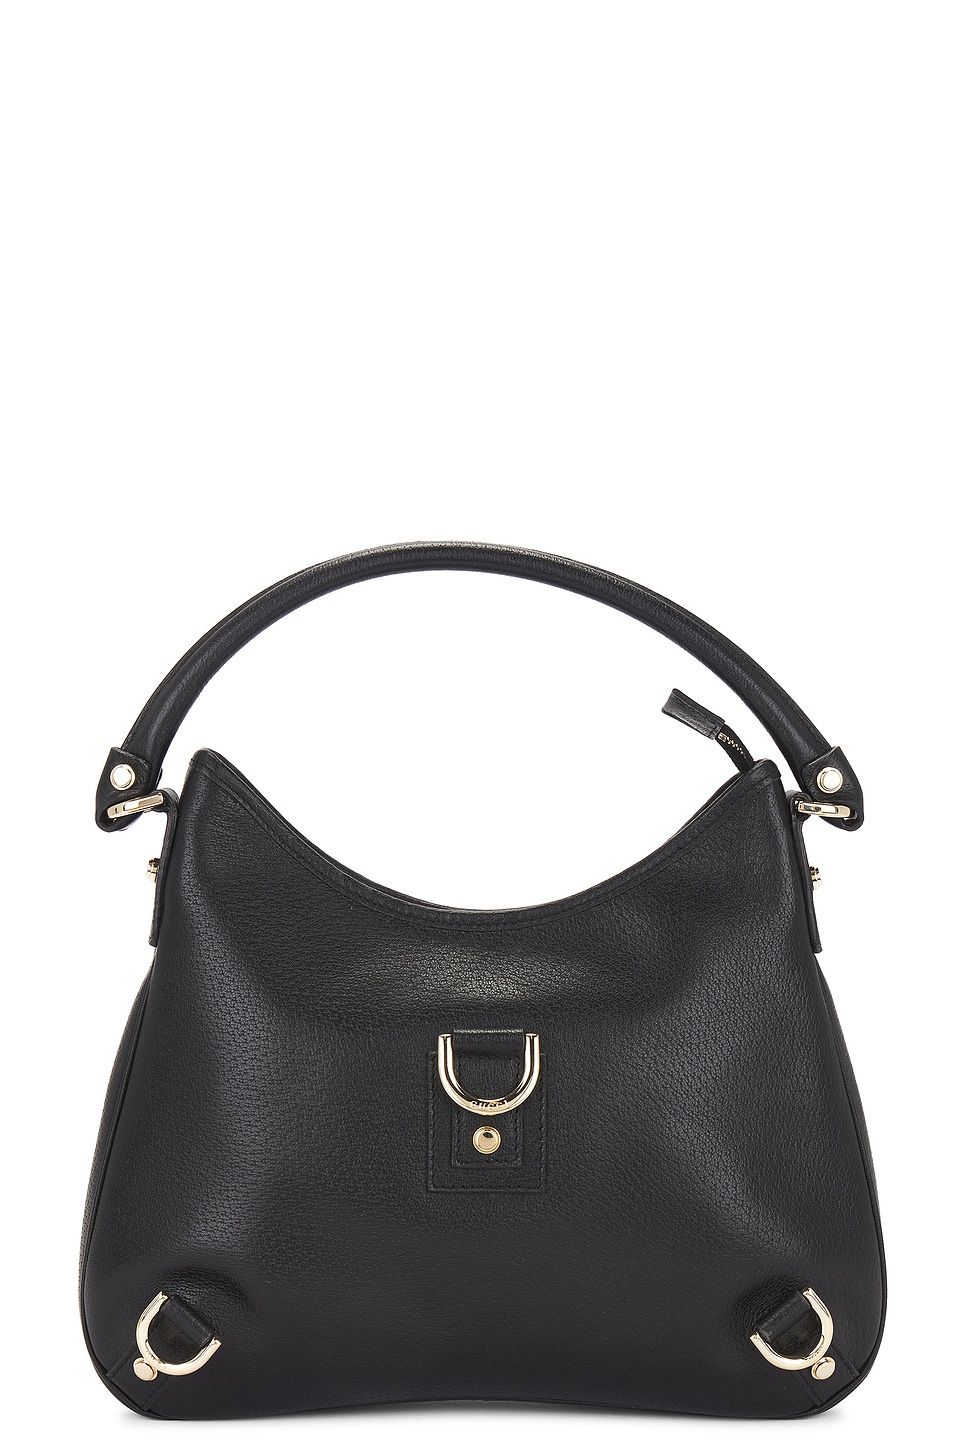 Gucci Leather Shoulder Bag In Black